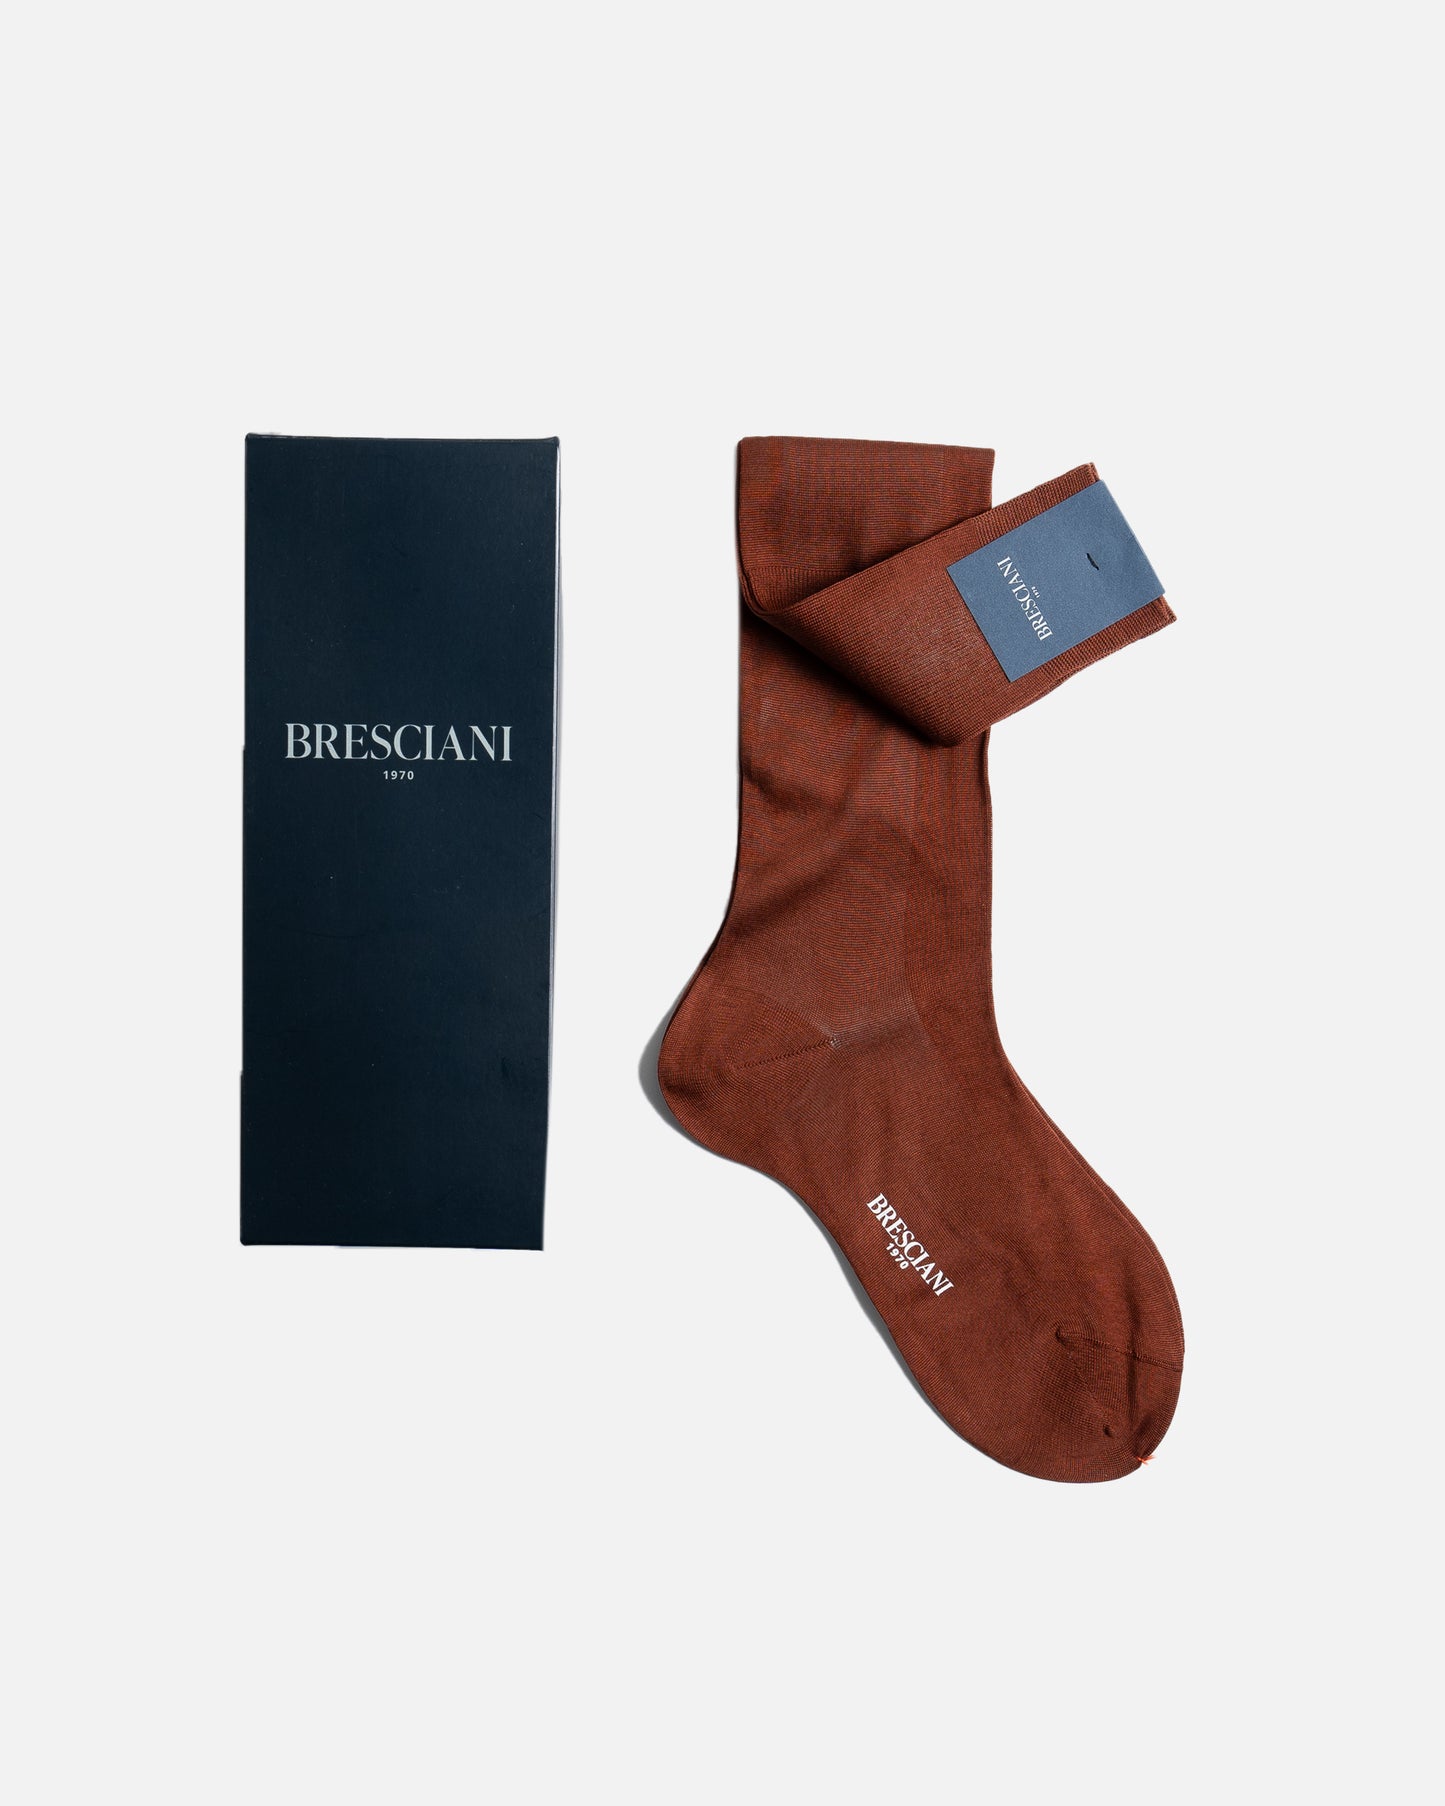 Bresciani 033 Bruciato Over The Calf Cotton socks